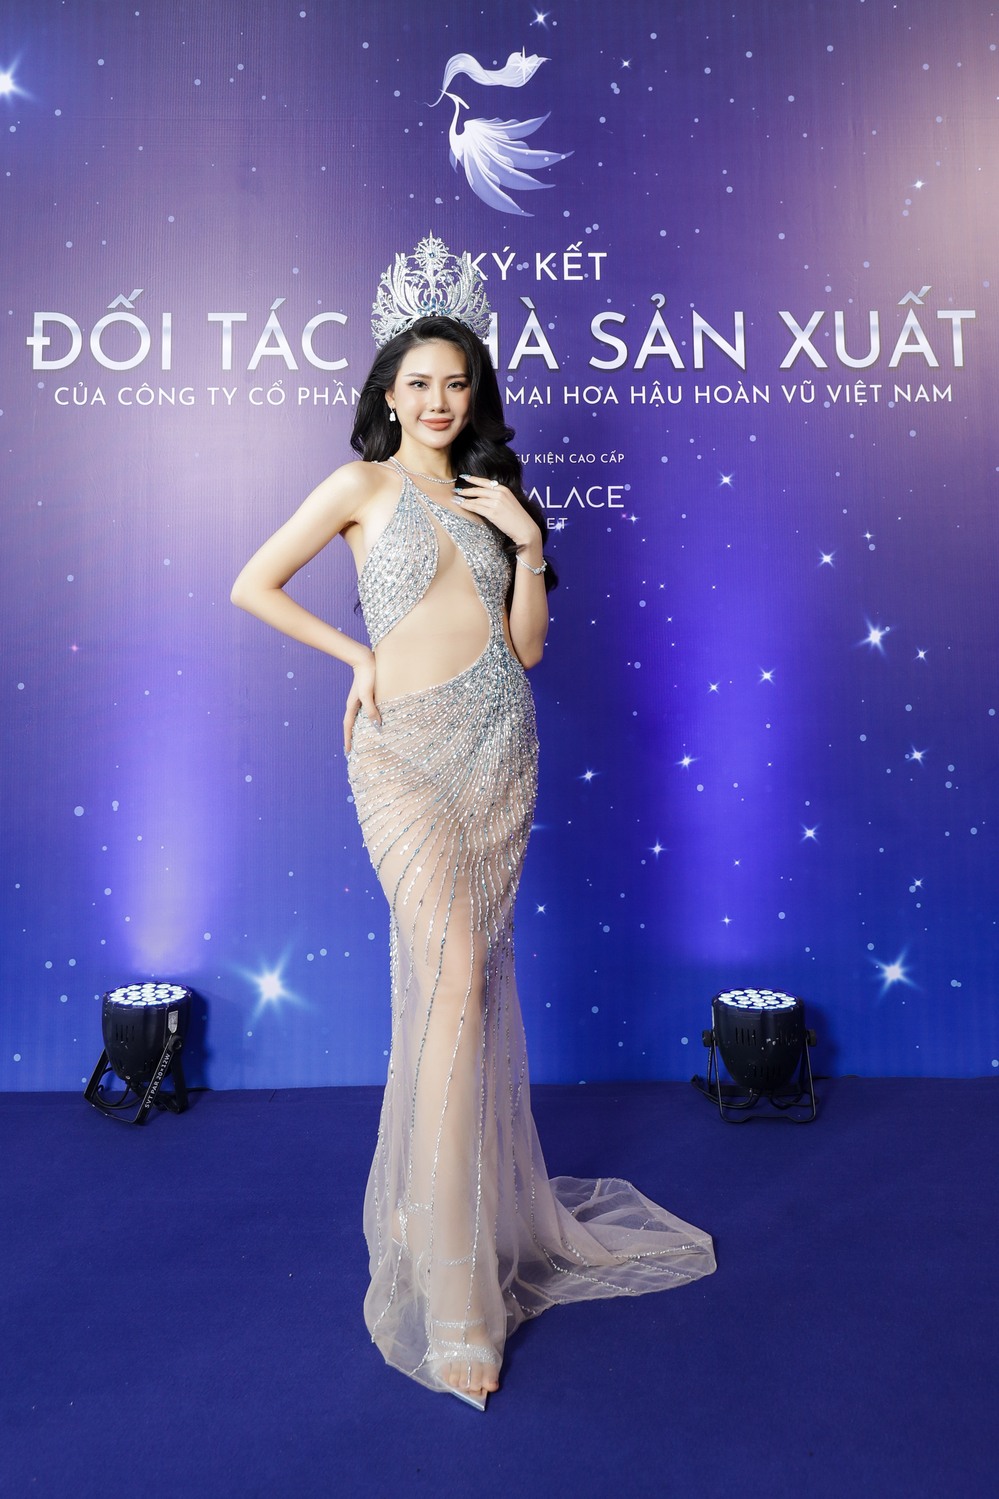 Dược sĩ Tiến - Hương Giang đồng hành cùng Miss Universe Vietnam - Ảnh 4.